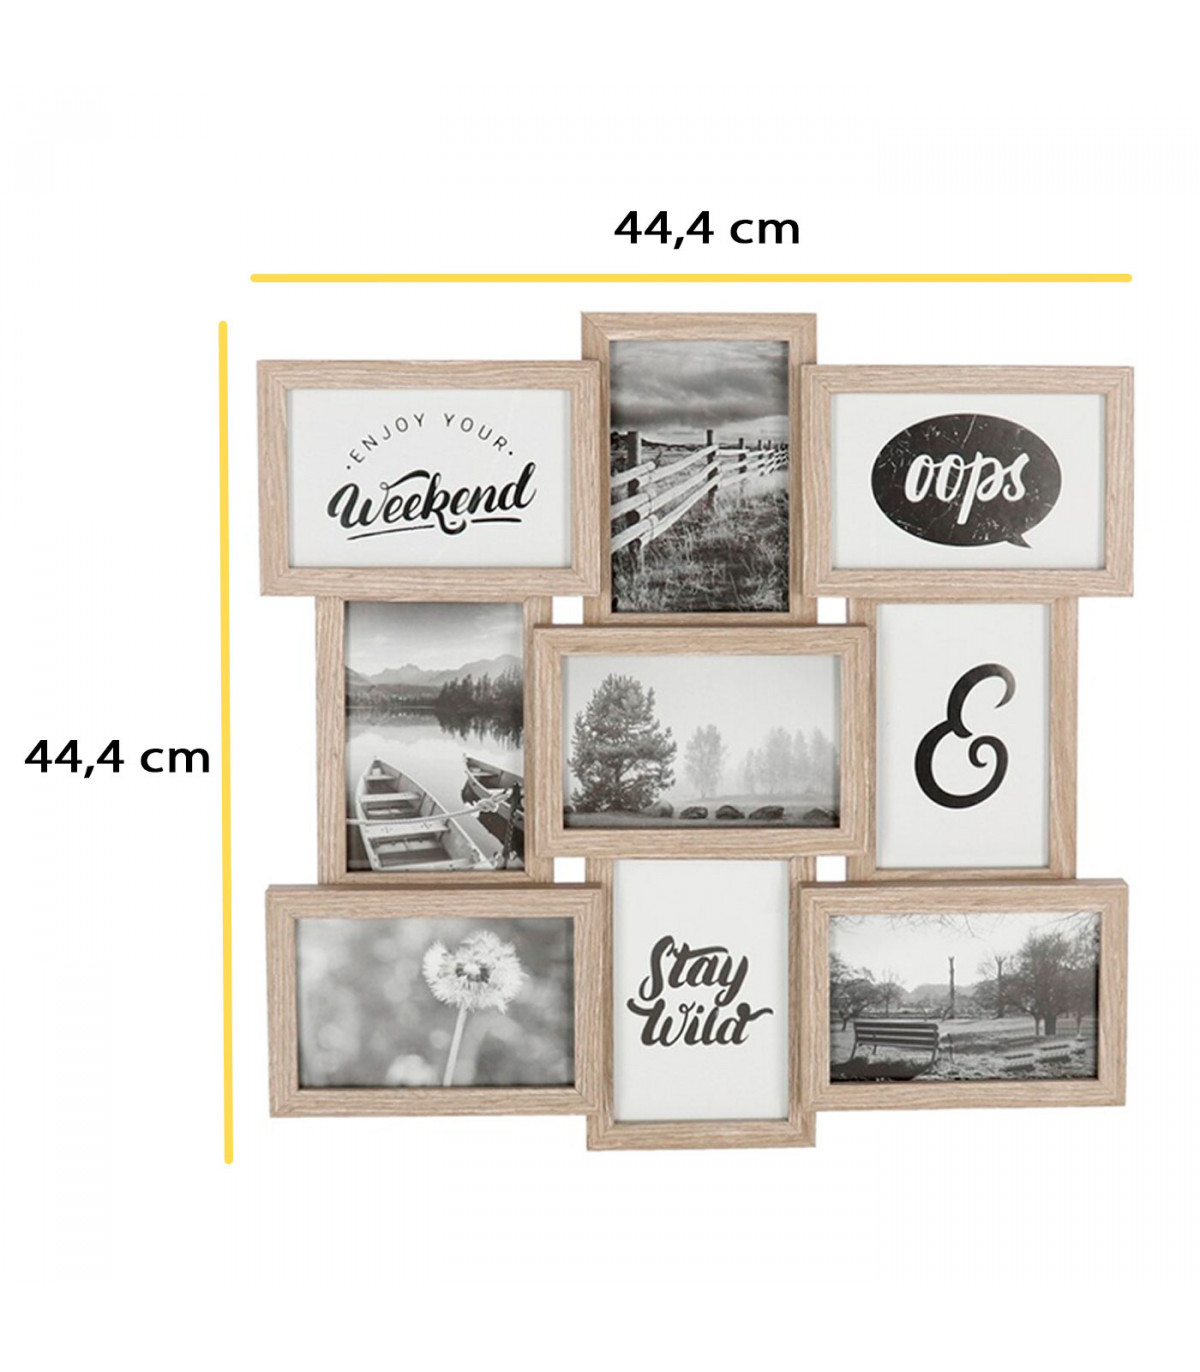 Multimarco de madera, 9 fotos, marco múltiple para fotografías de